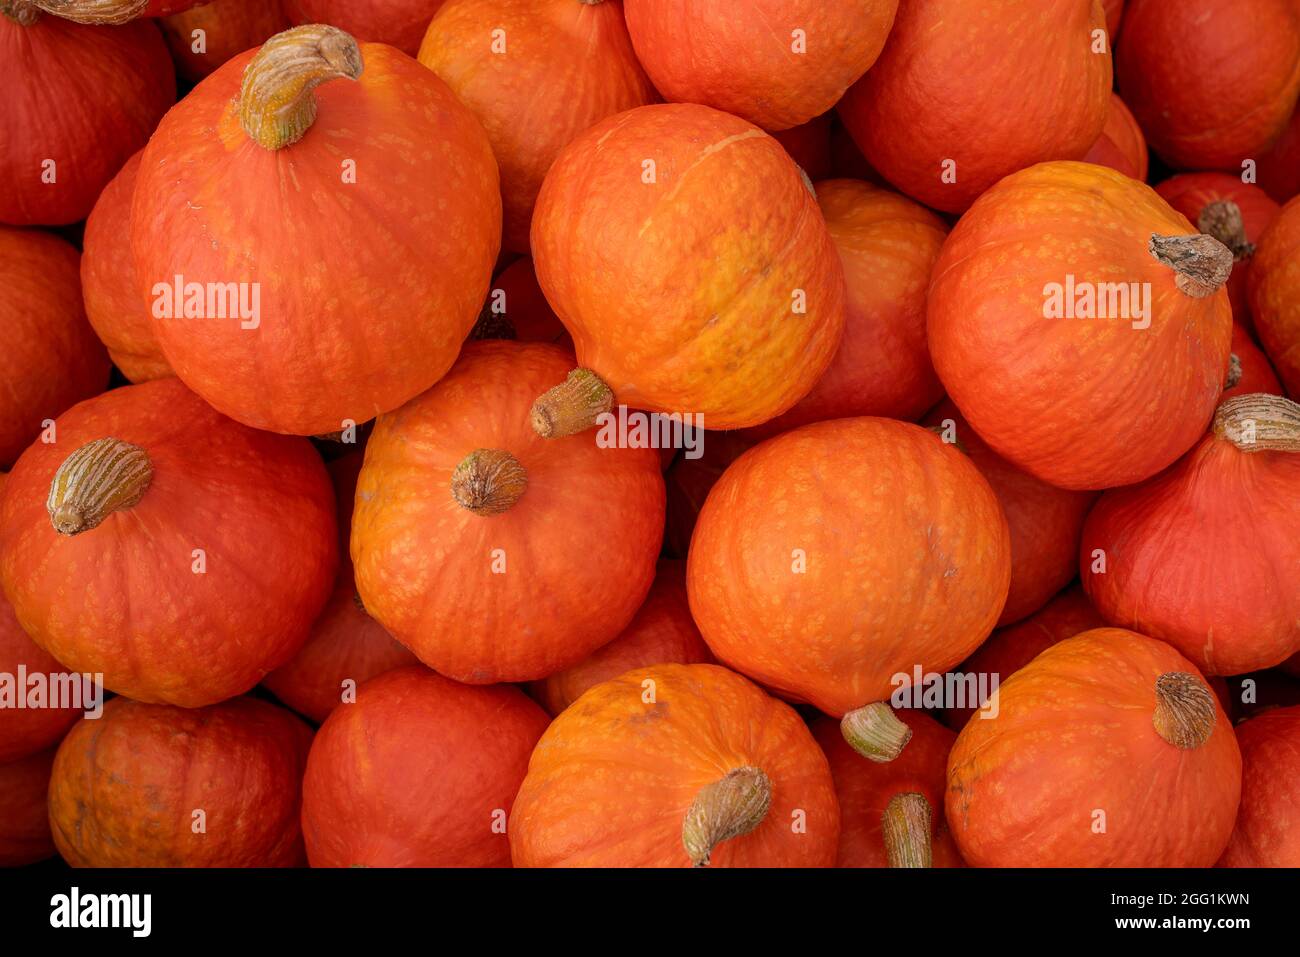 muchas calabazas de naranja en el mercado de agricultores al aire libre Foto de stock